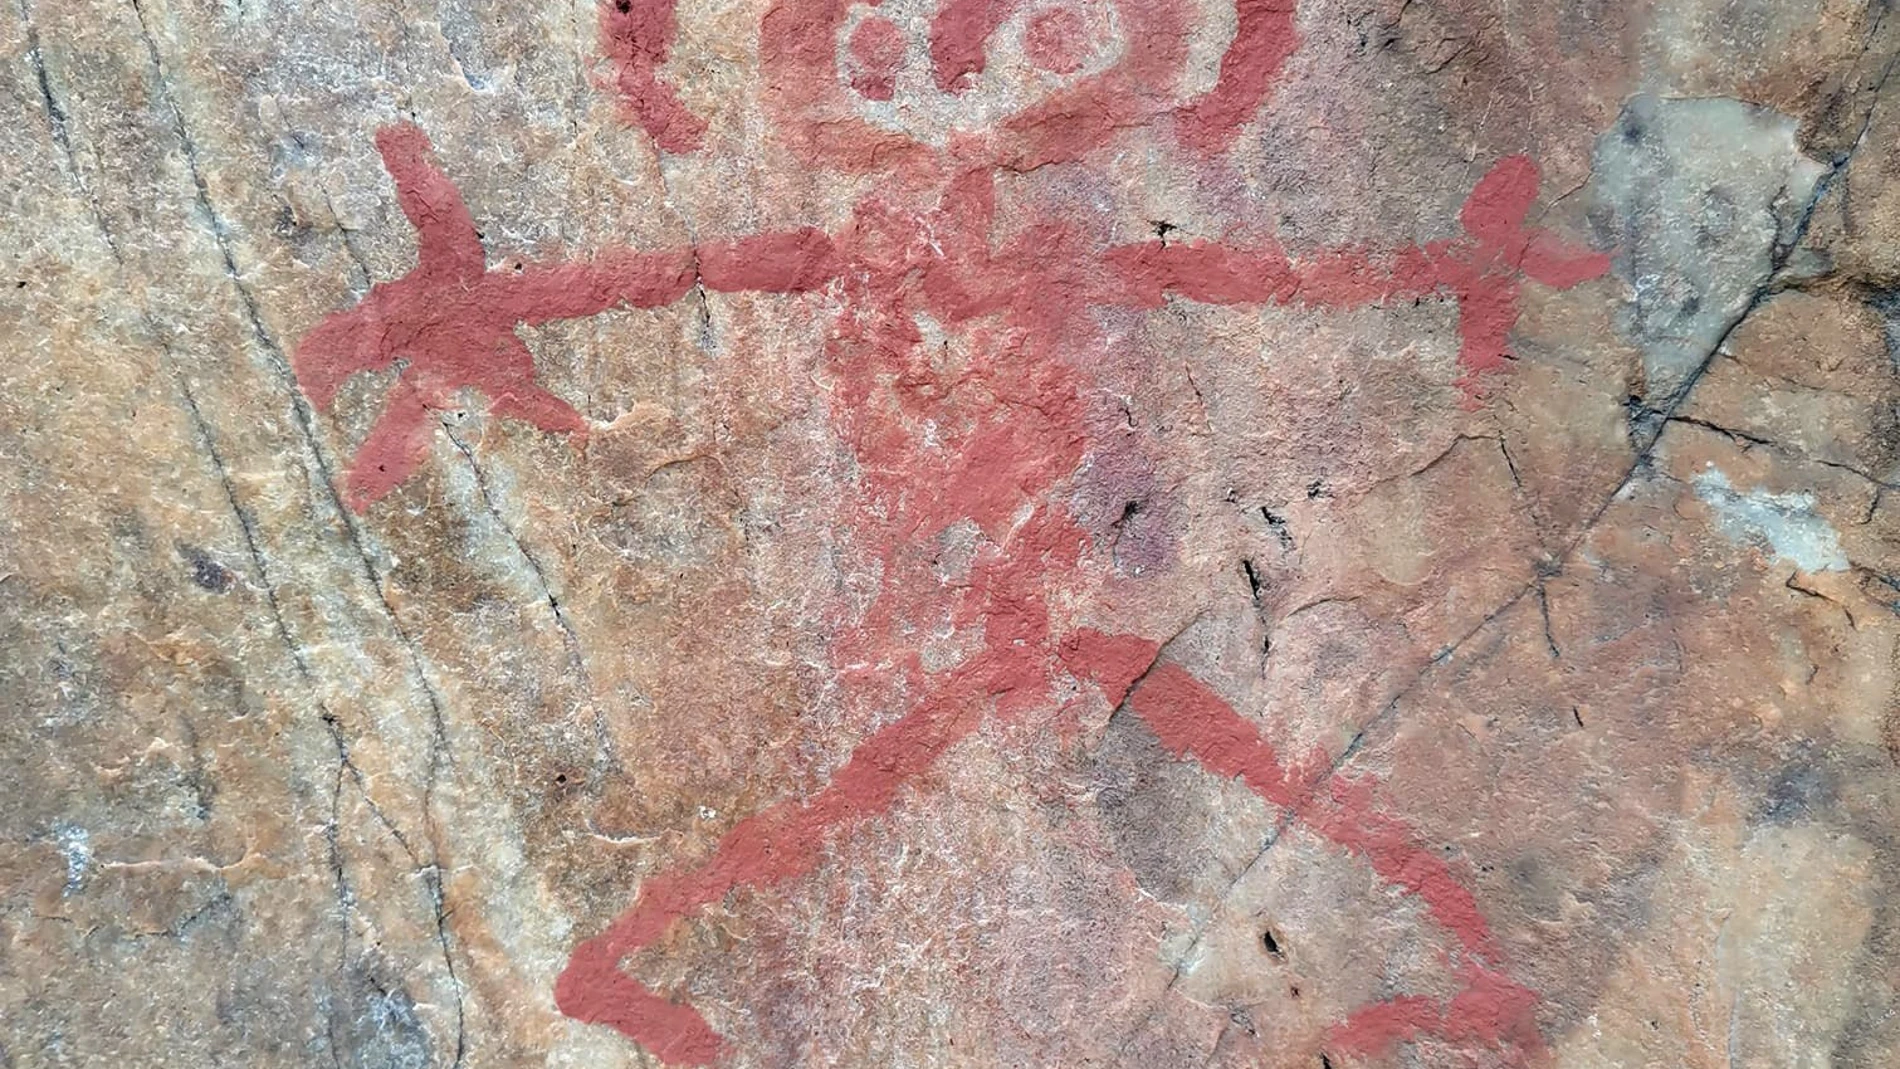 Vista del acto vandálico que ha dañado uno de los tres abrigos que conforman el conjunto de pinturas rupestres del Risco de San Blas, en Alburquerque (Badajoz